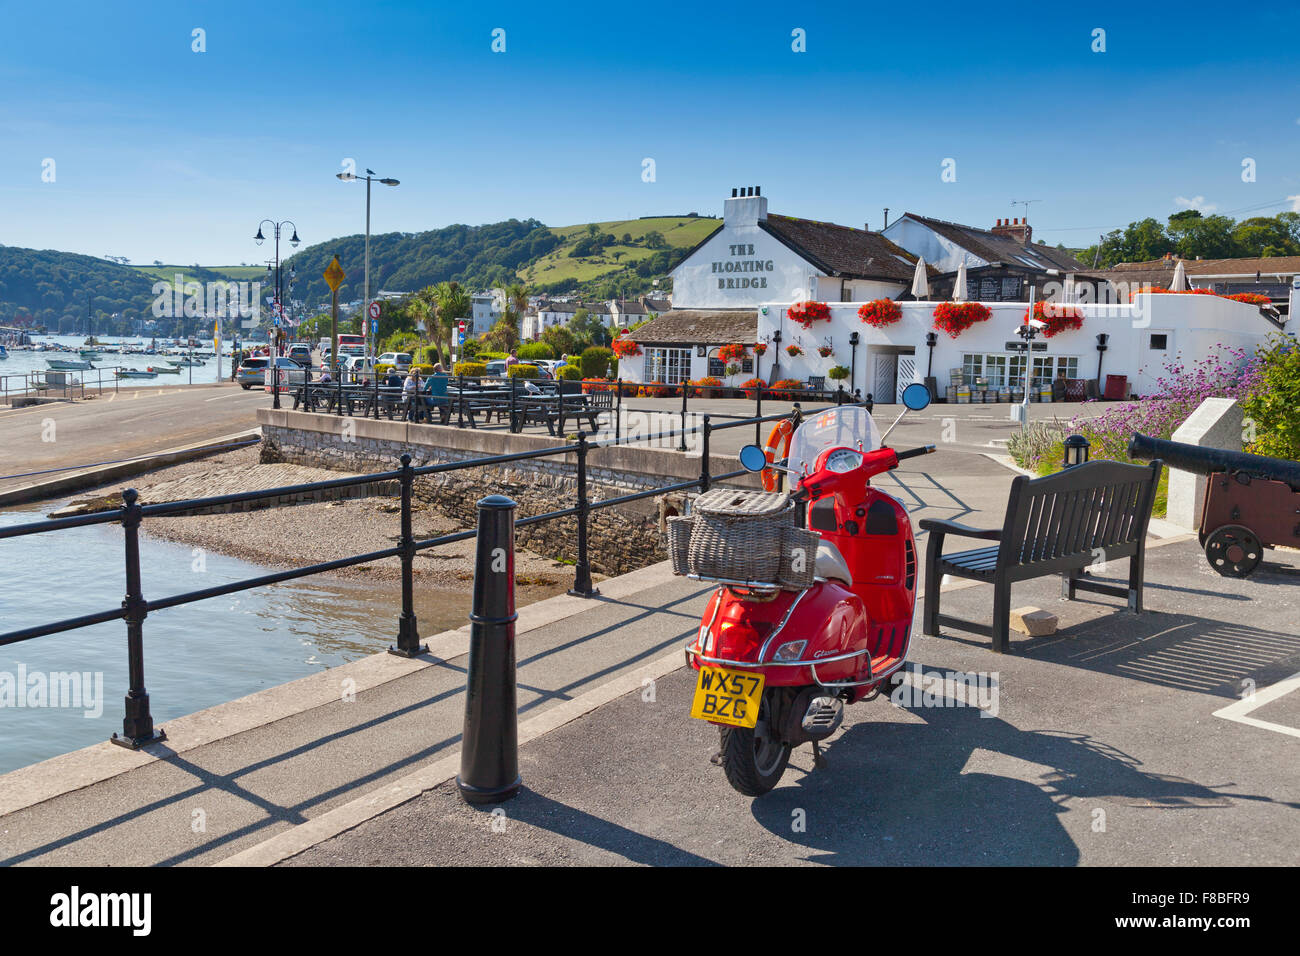 Un retro-style scooter al di fuori del ponte galleggiante pub in Dartmouth, Devon, Inghilterra, Regno Unito Foto Stock